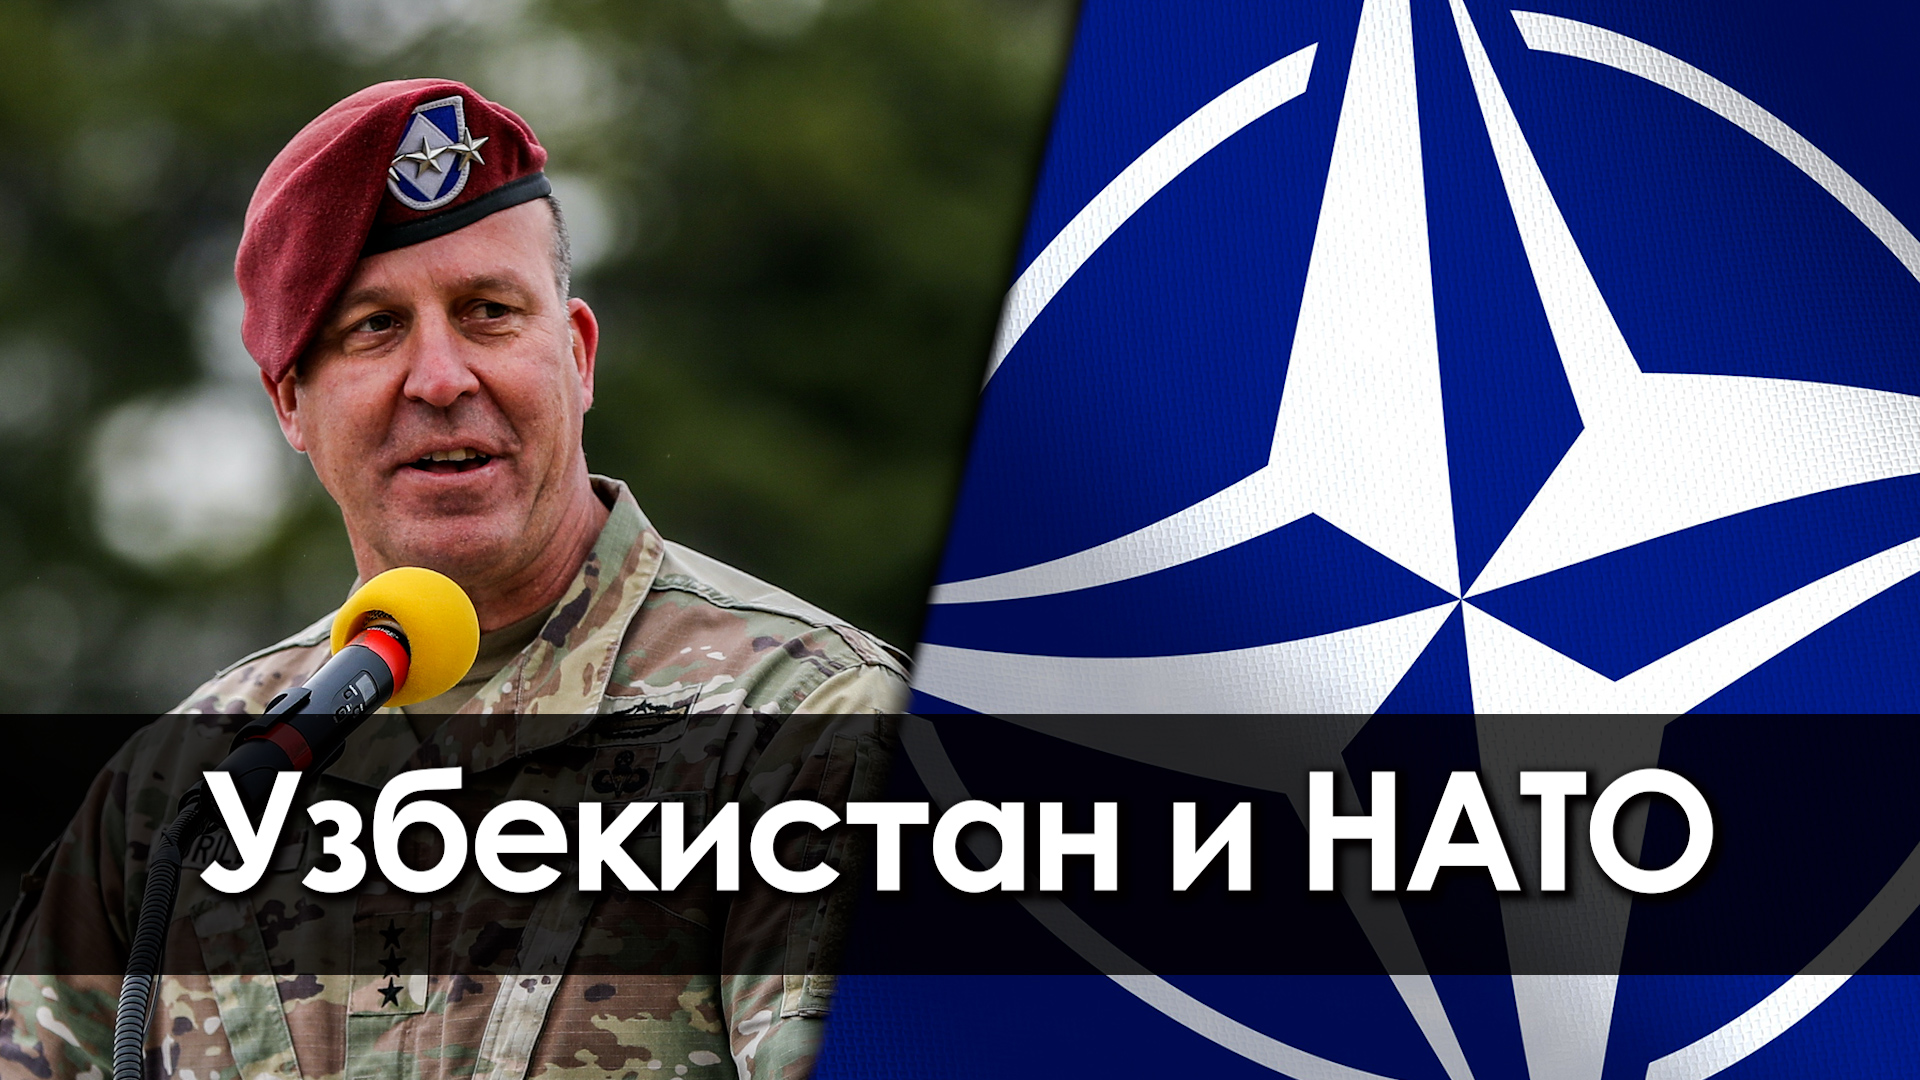 Узбекистан и НАТО
Опасные связи